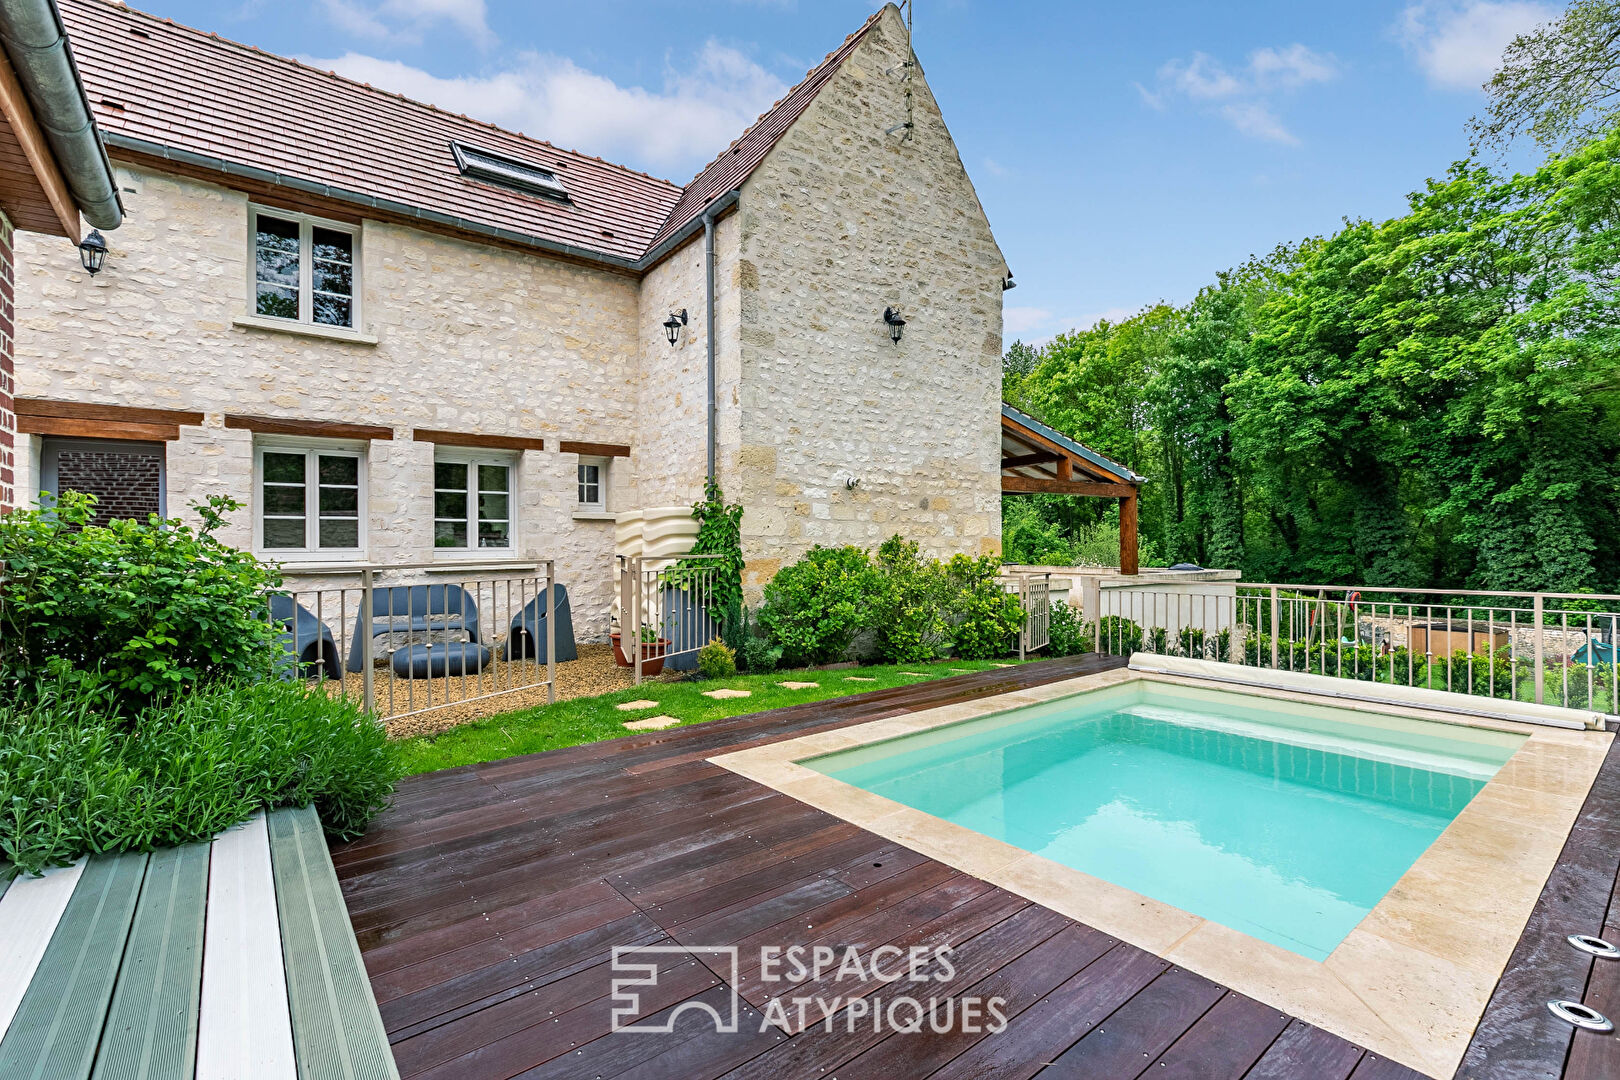 Maison de famille rénovée en pierres avec piscine près de Compiègne (60200)